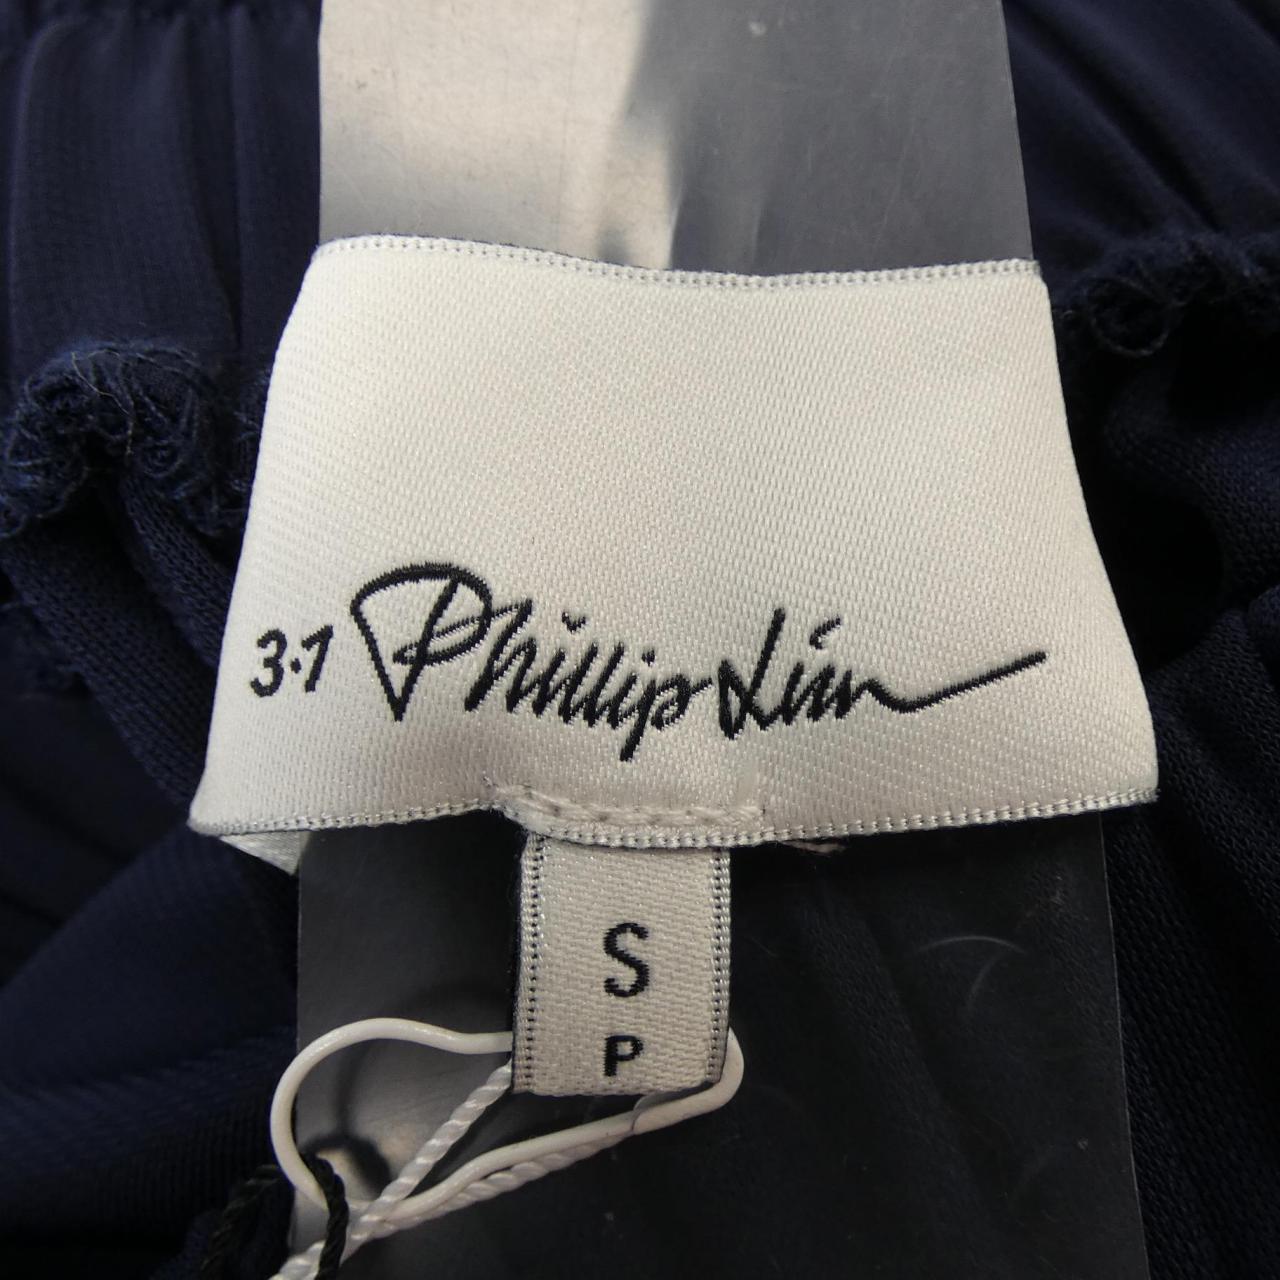 3.1 Phillip Lim 3.1 林菲利普裙